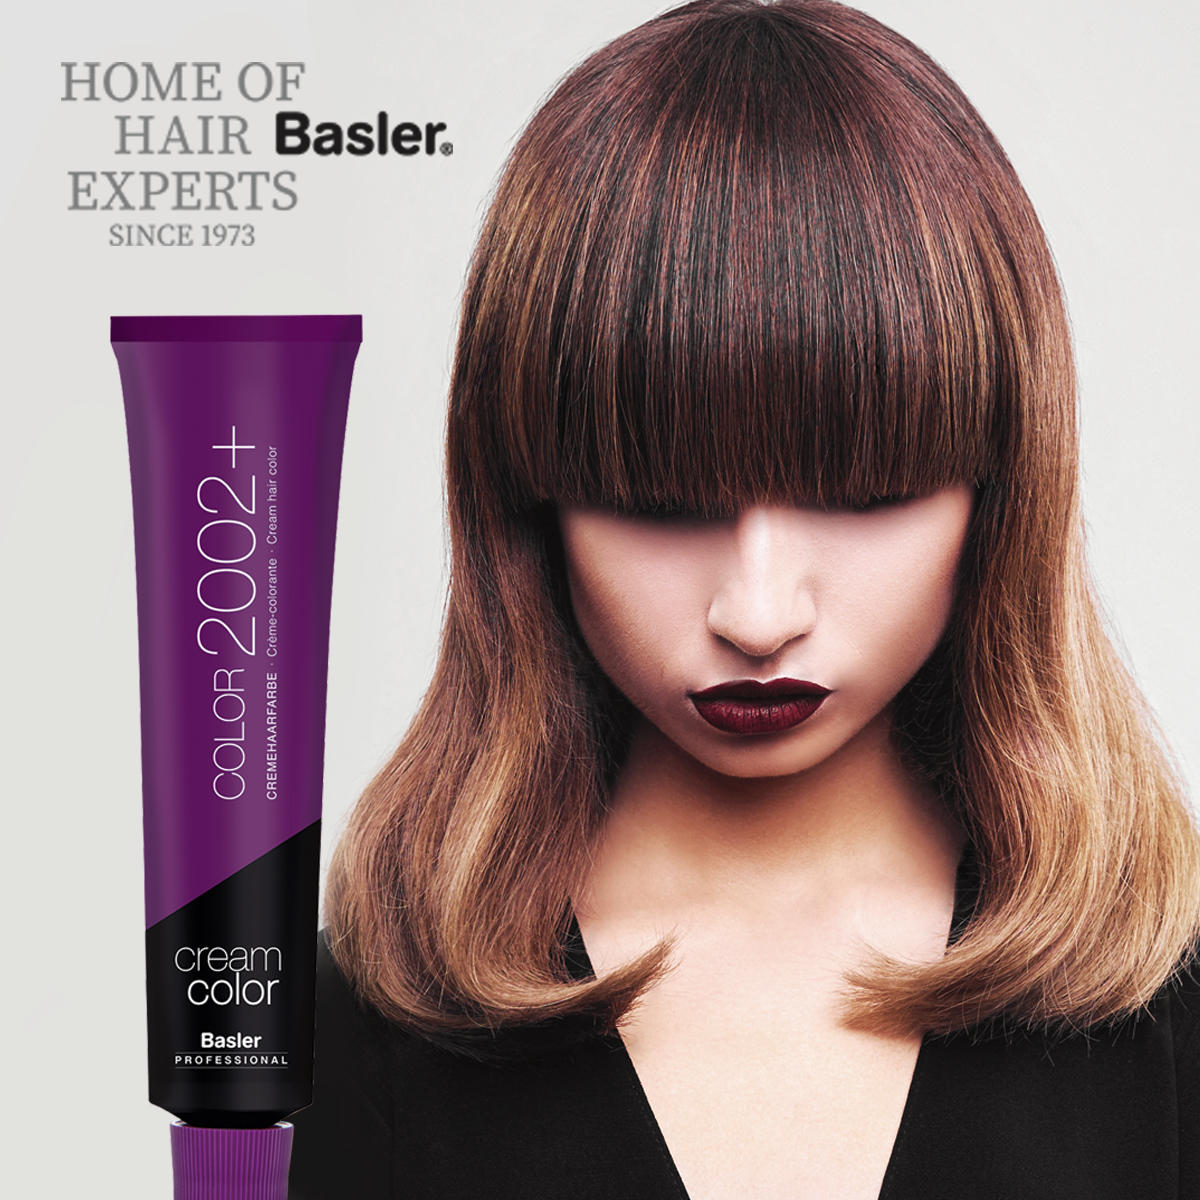 Basler cream hair colour 9/8 light blond pearl - Nordic blond, tube 60 ml - 3